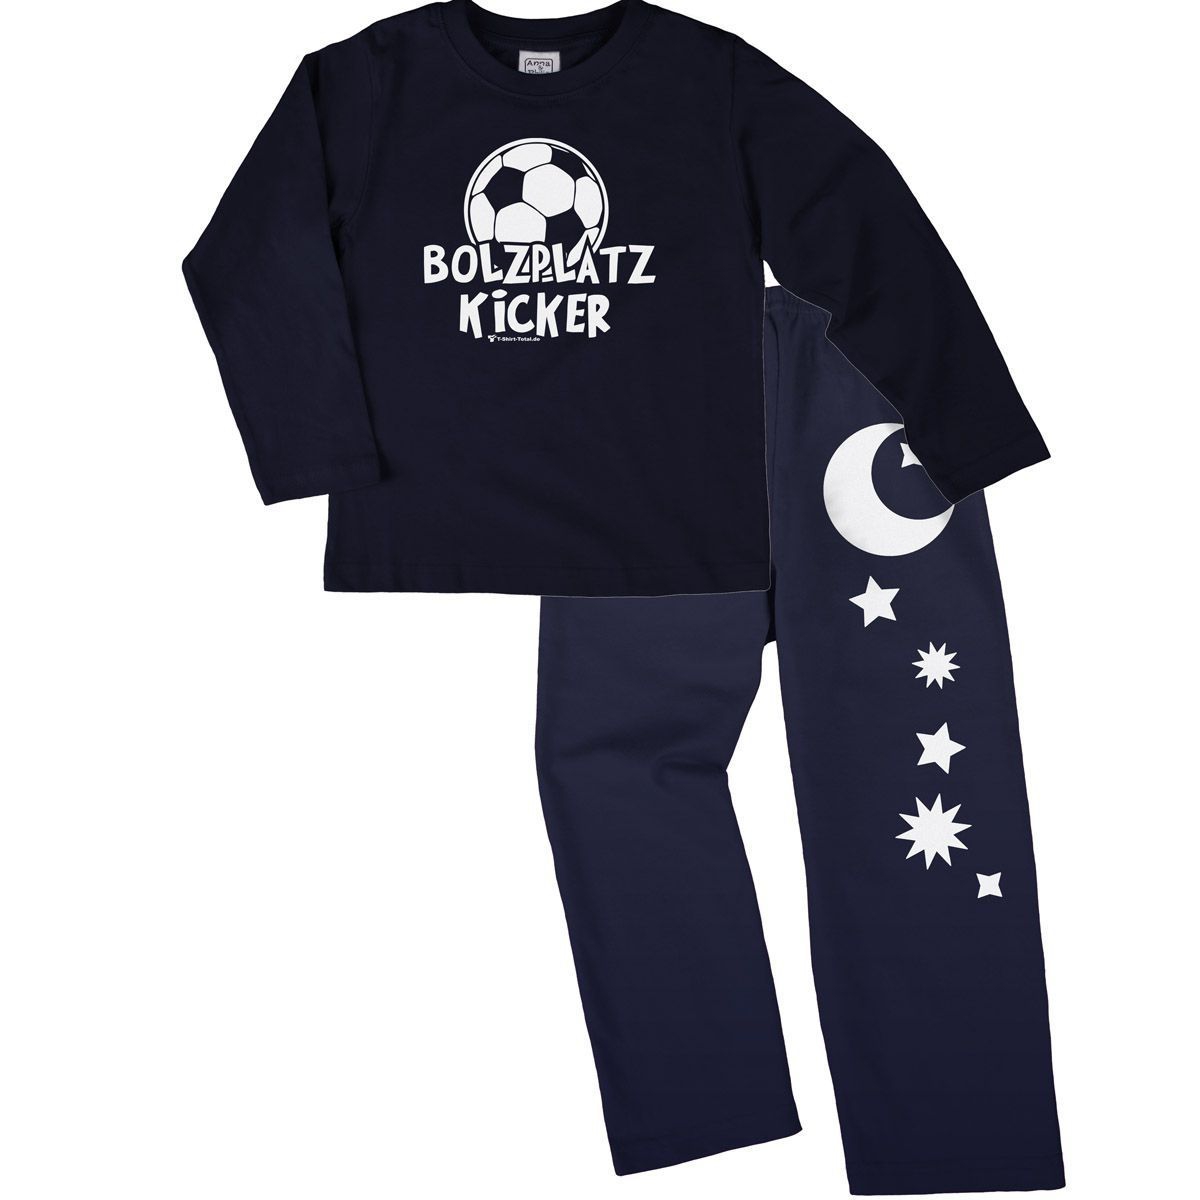 Bolzplatz Kicker Pyjama Set navy / navy 80 / 86